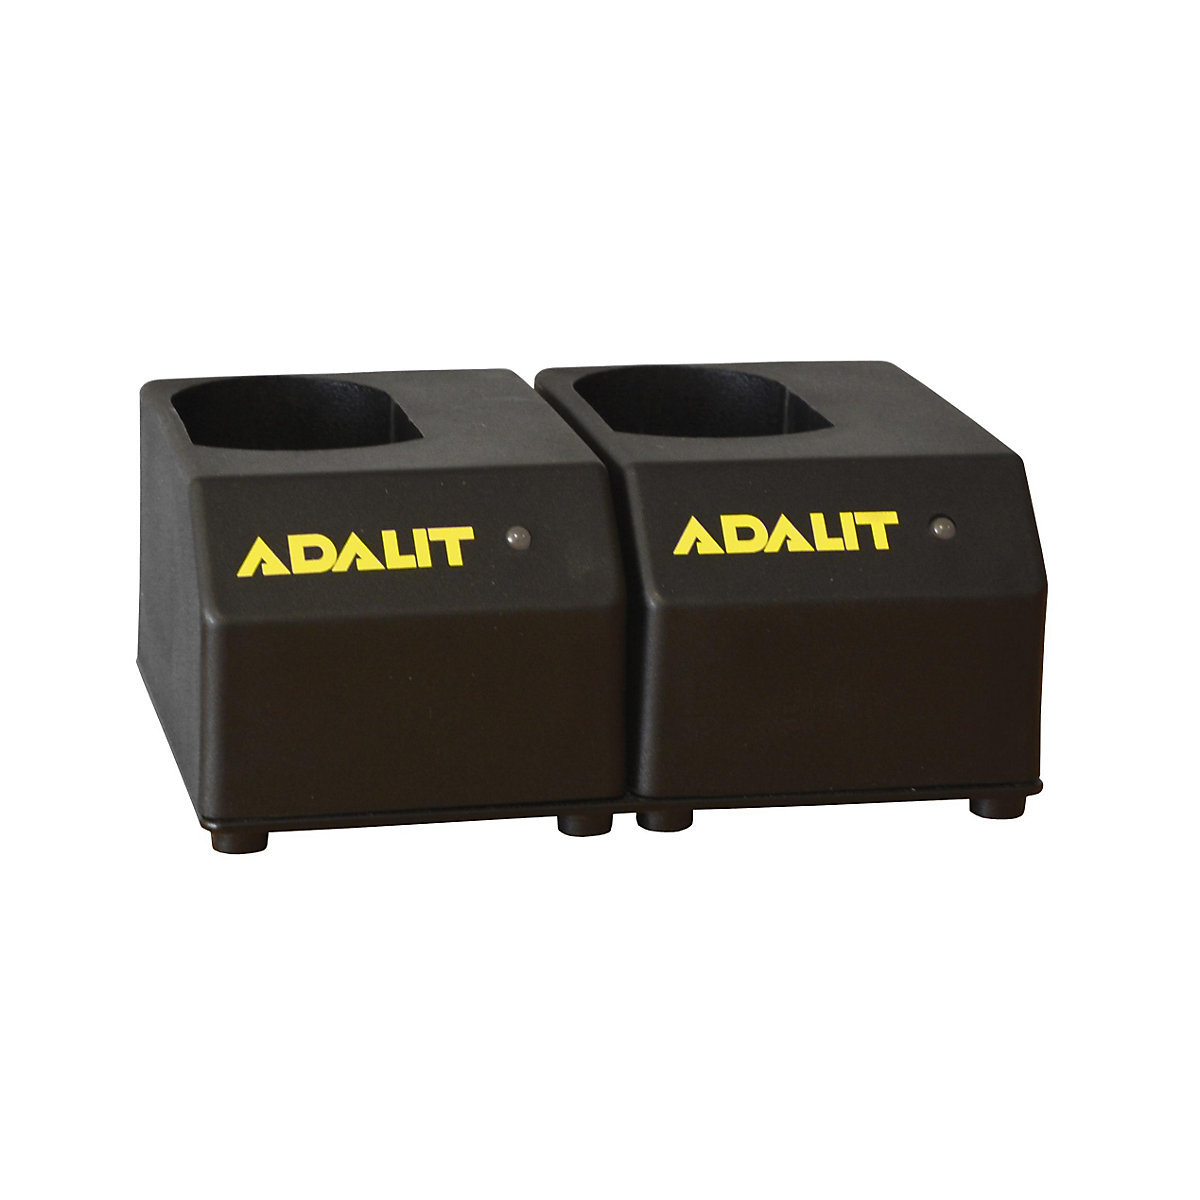 Caricabatteria per lampade portatili ADALIT®, per accumulatore agli ioni di litio, per 2 lampade di sicurezza a LED-5